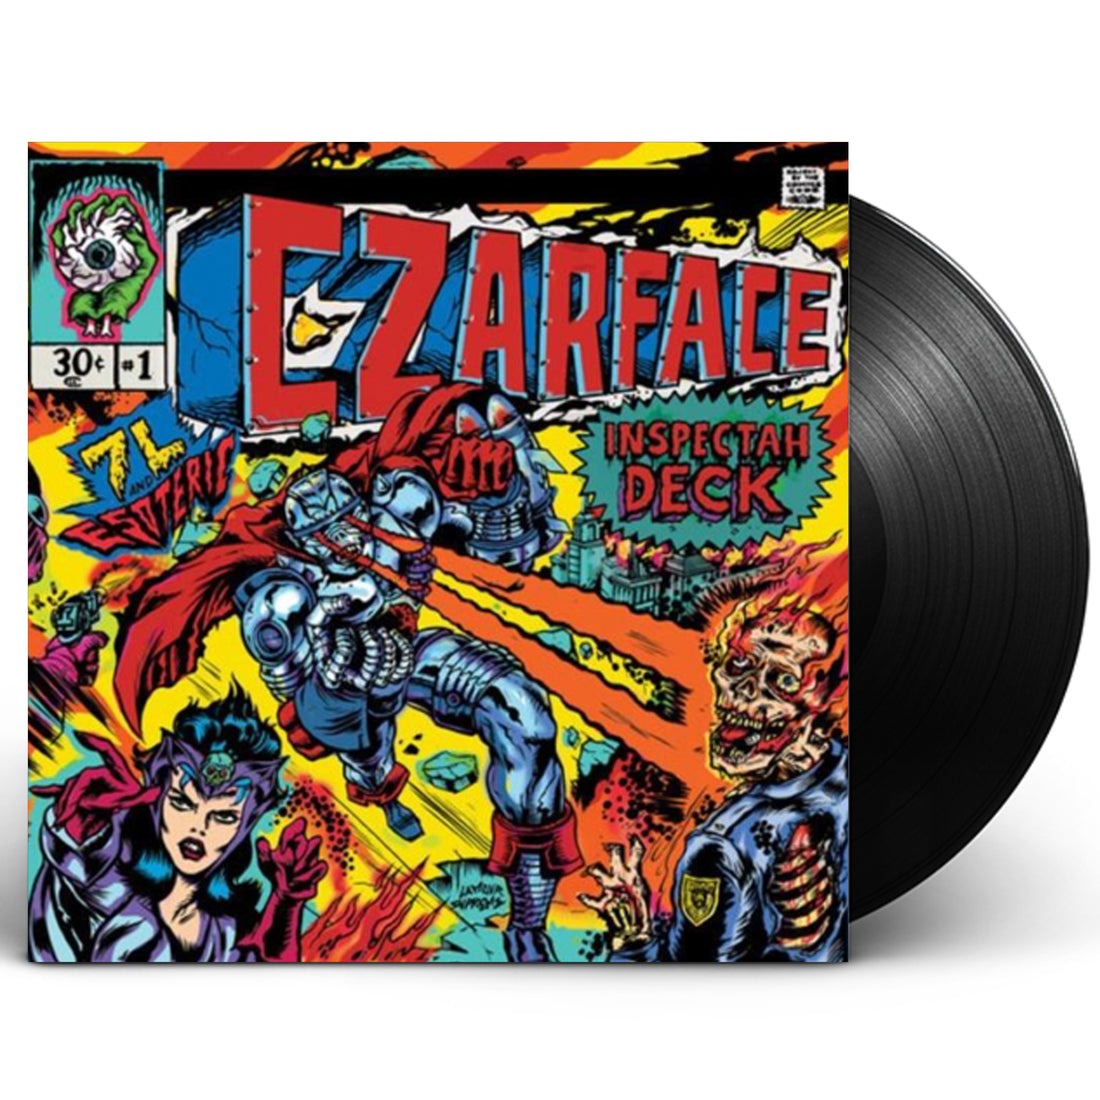 Czarface "Czarface" LP